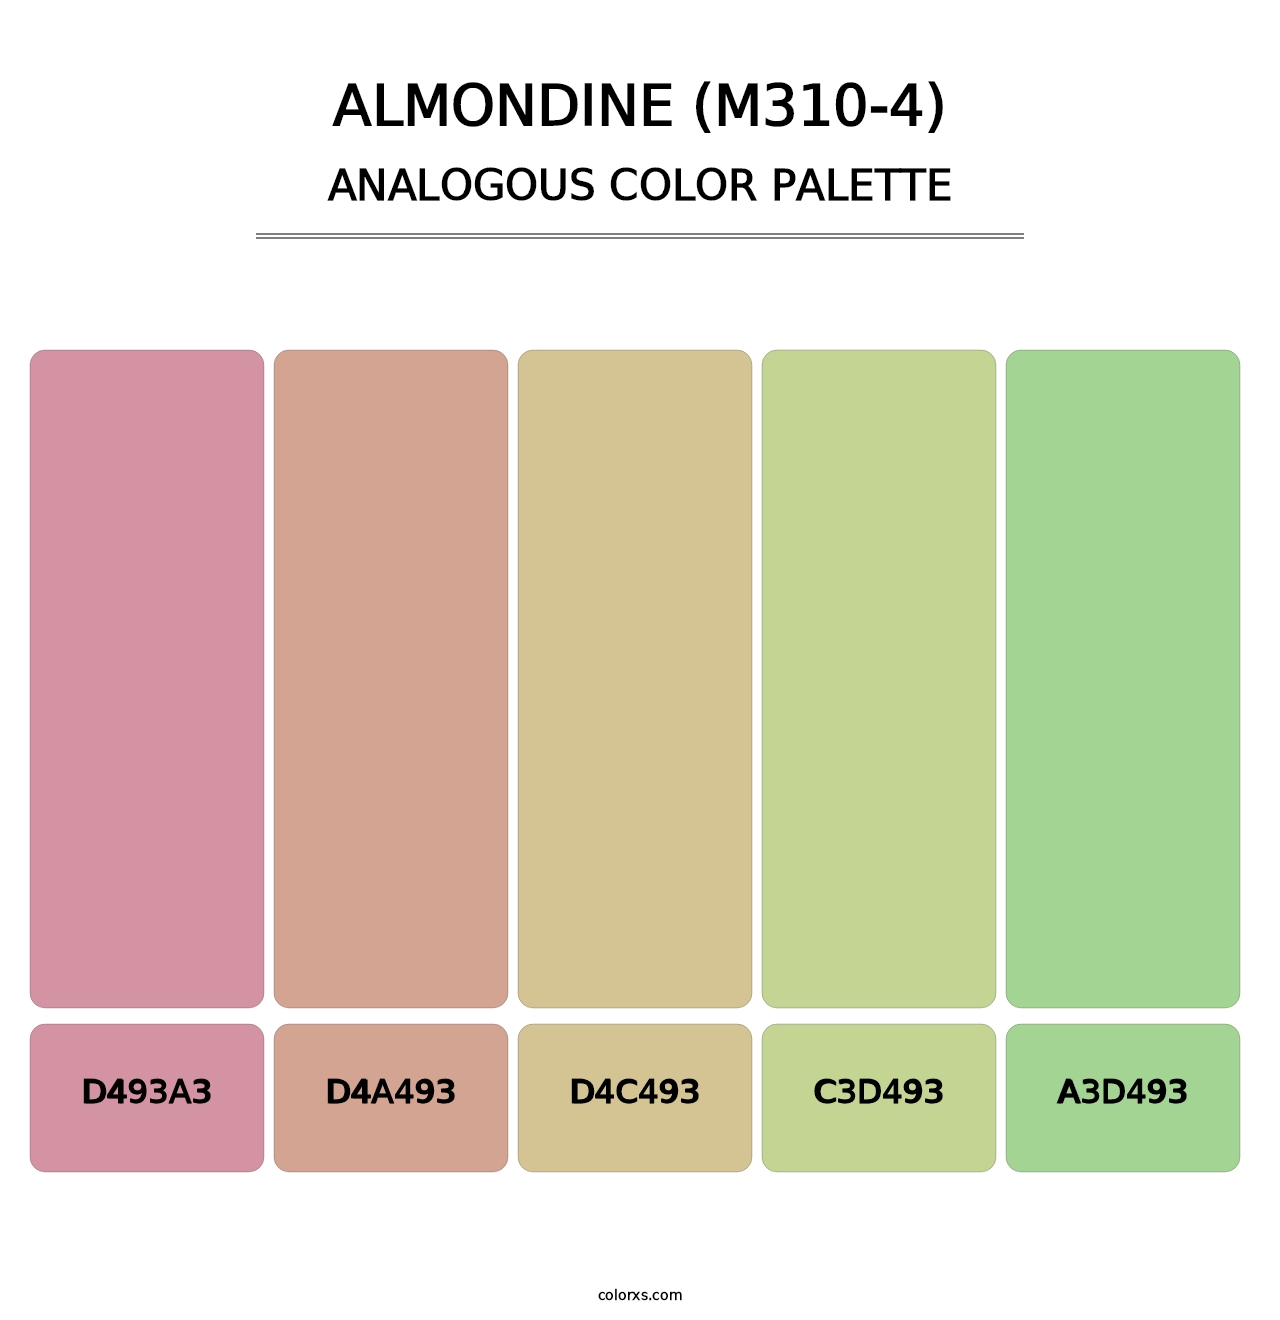 Almondine (M310-4) - Analogous Color Palette